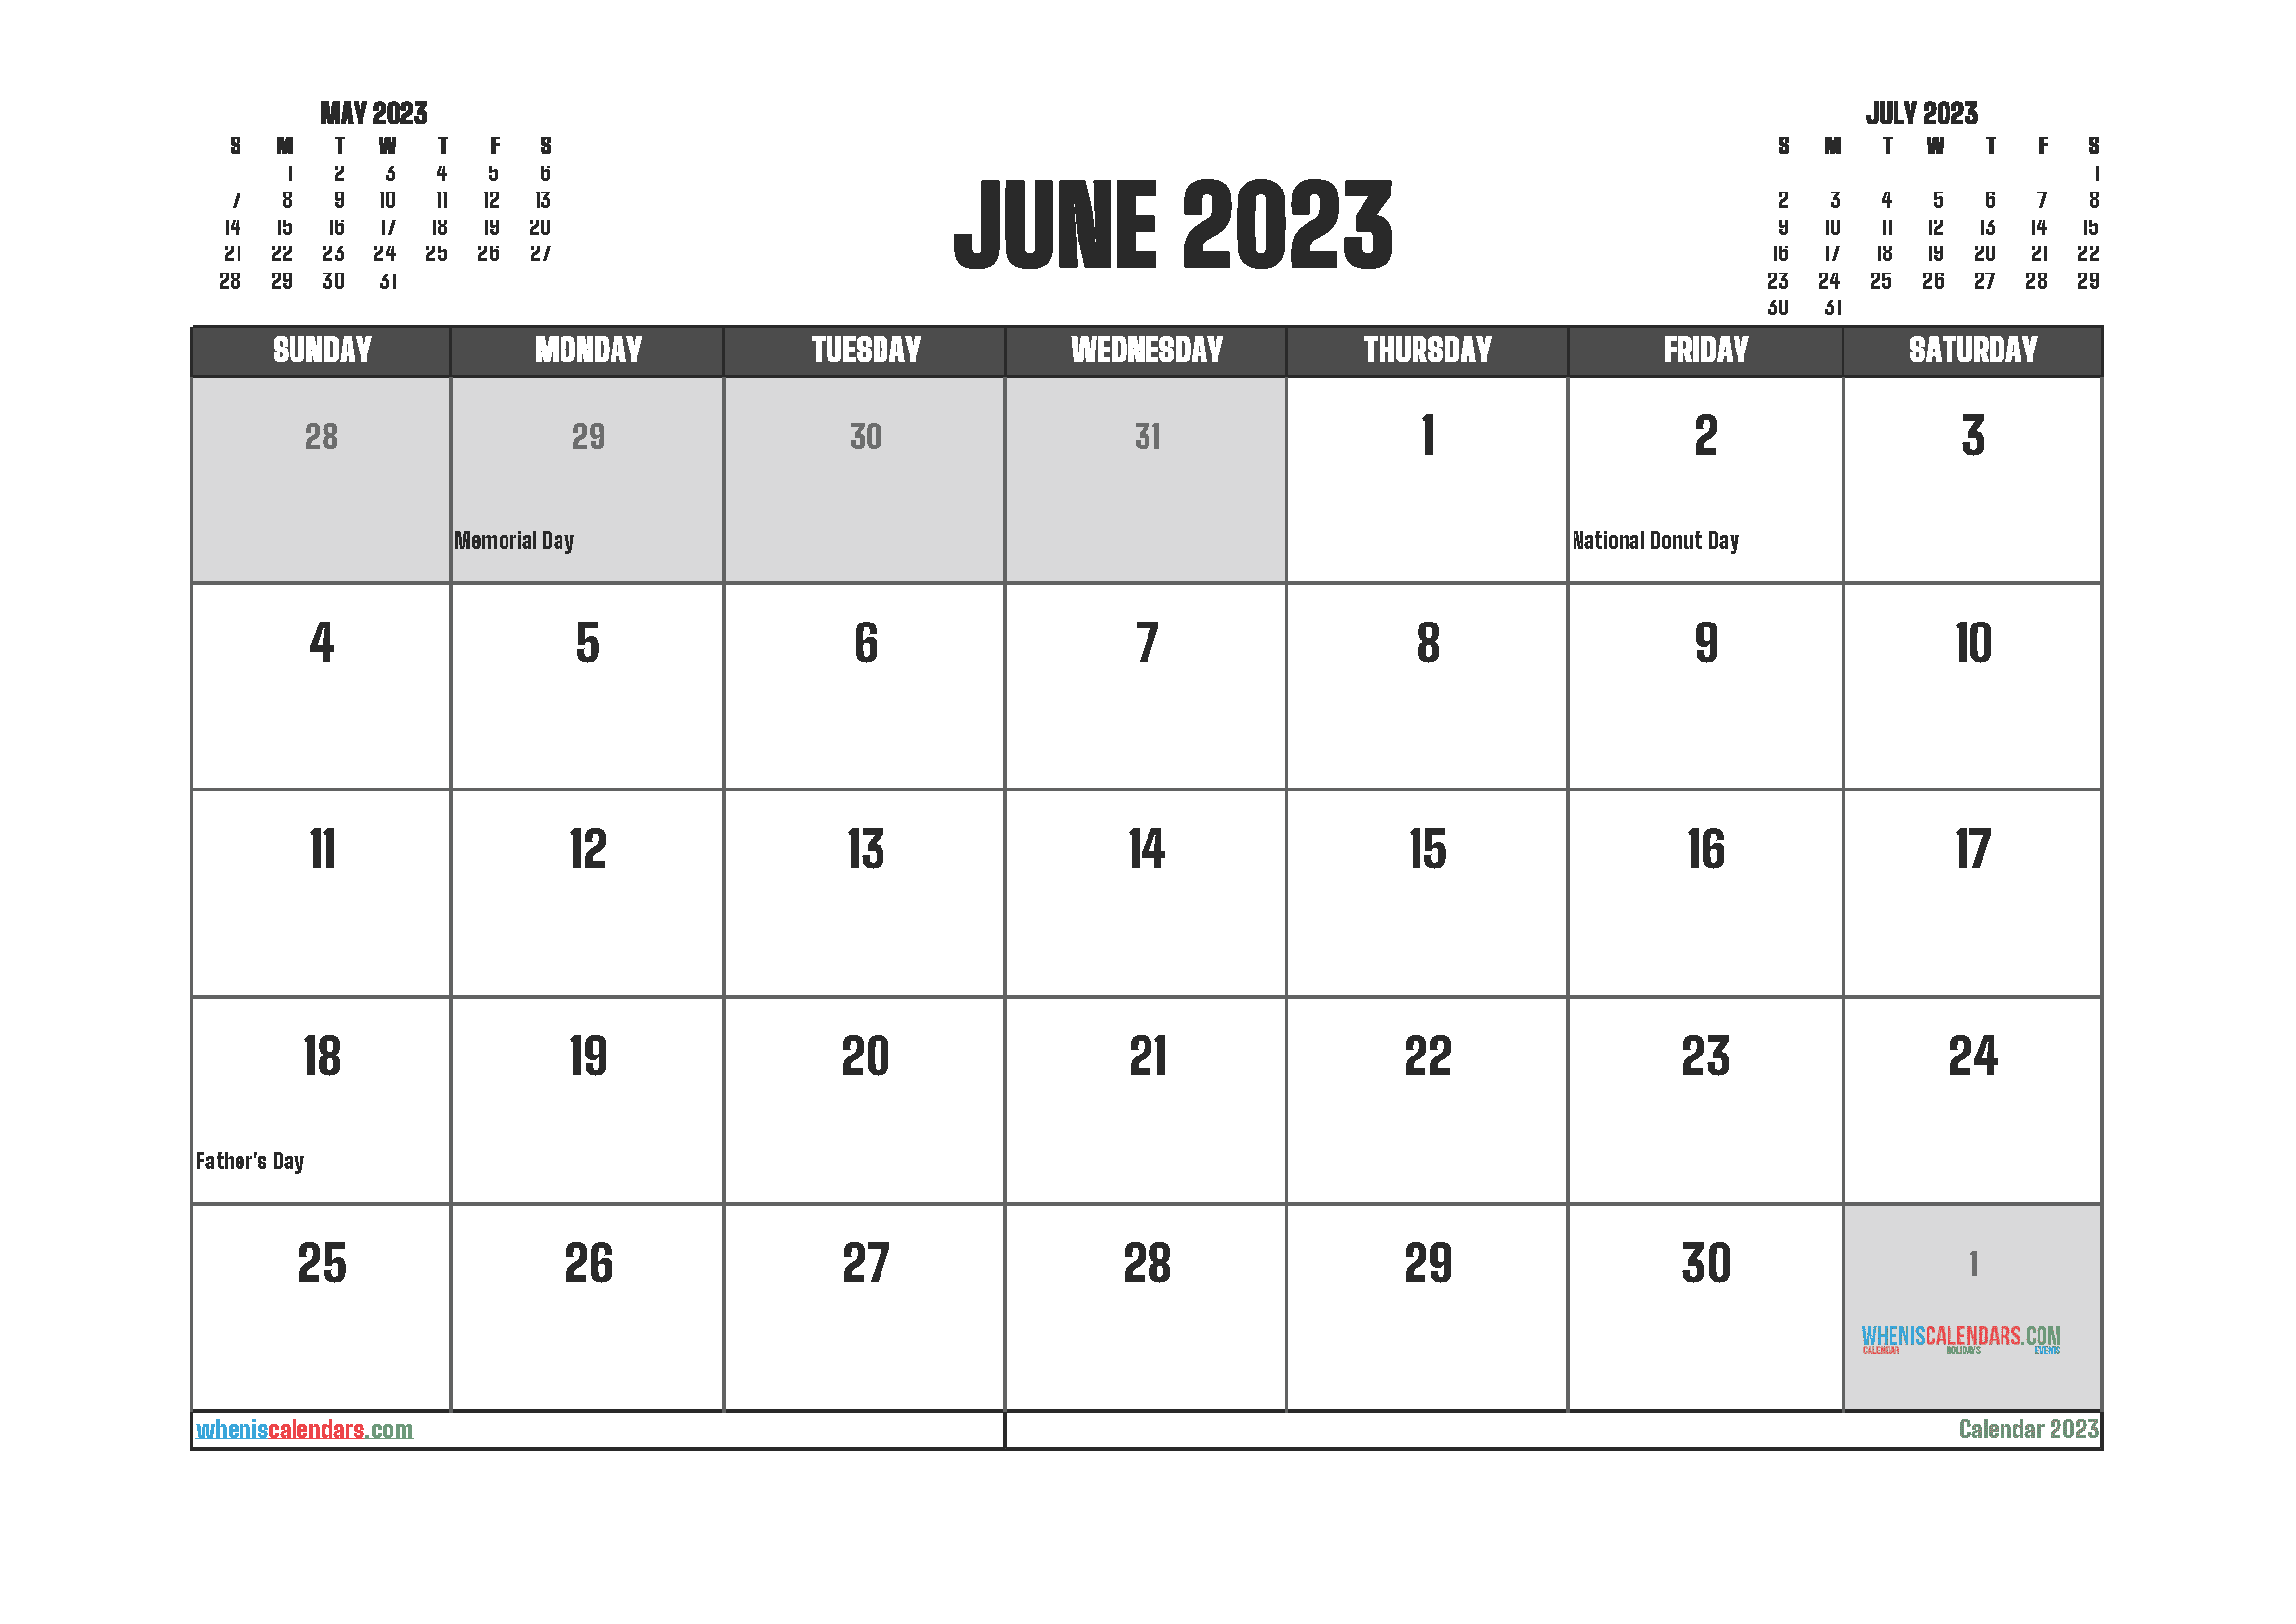 June 2023 Printable Calendar Free